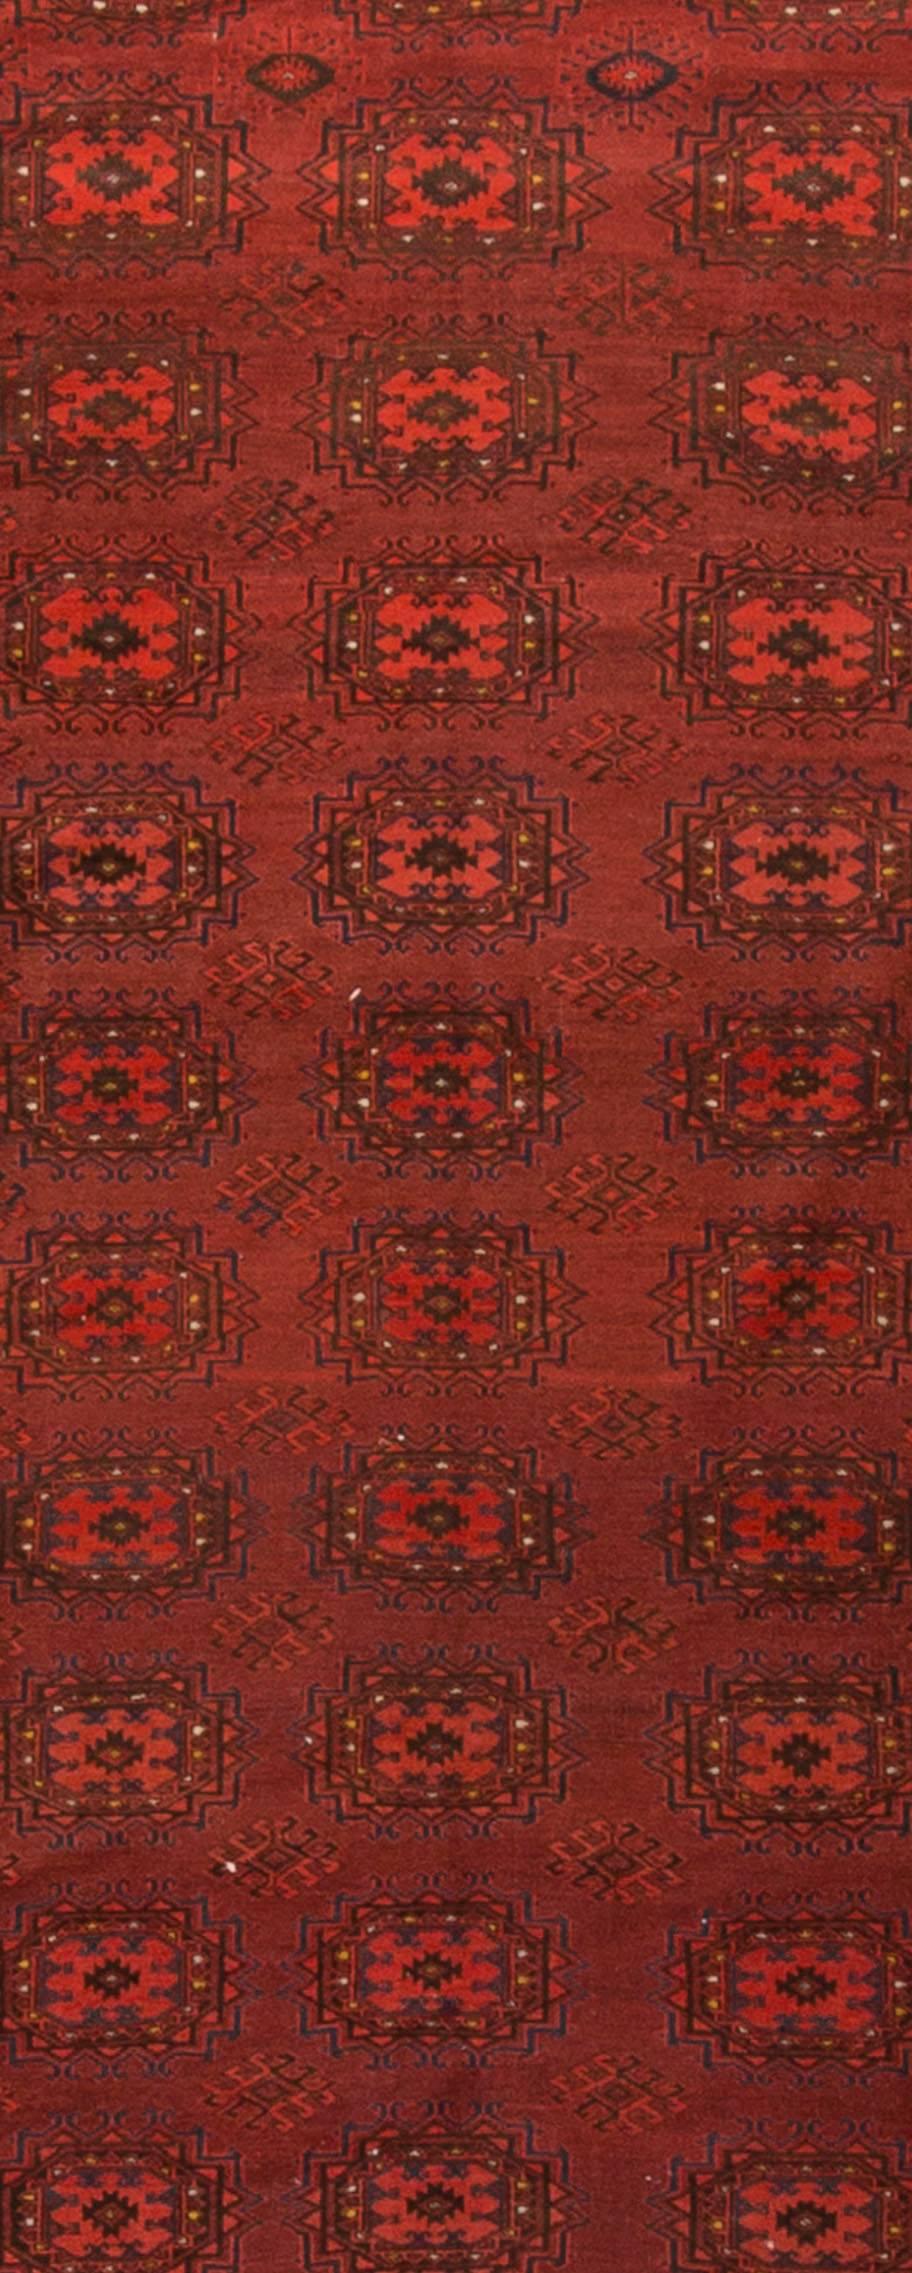 Les tapis Bokara ou Bokhara portent le nom de la ville où ils ont été vendus. Ces tapis étaient fabriqués par des tribus turcomanes, et ces tisserands ont donné au tapis son design distinctif. À la fin du XXe siècle, le tissage de tapis au